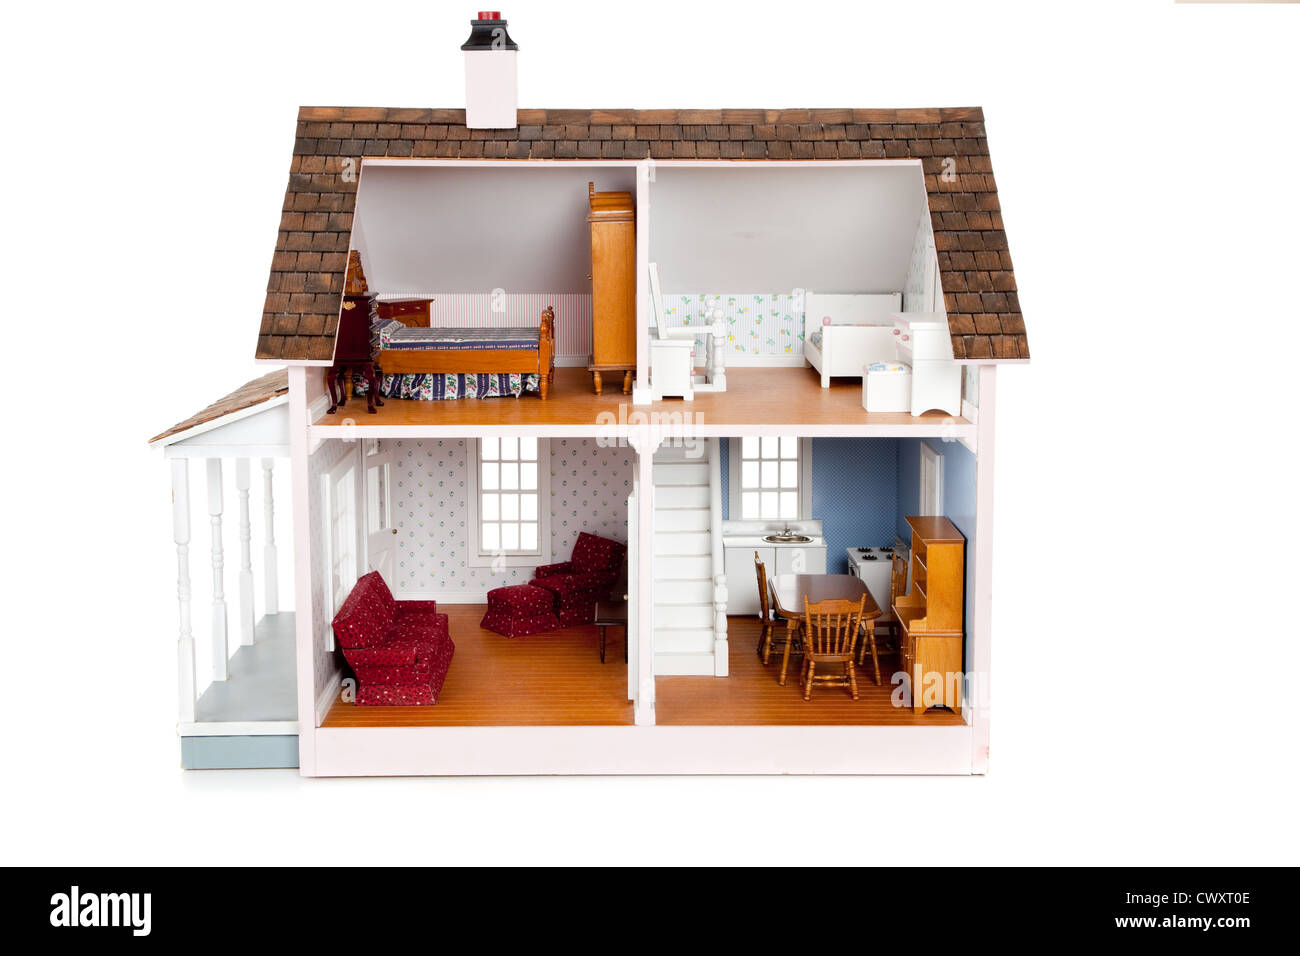 Casa bambole immagini e fotografie stock ad alta risoluzione - Alamy